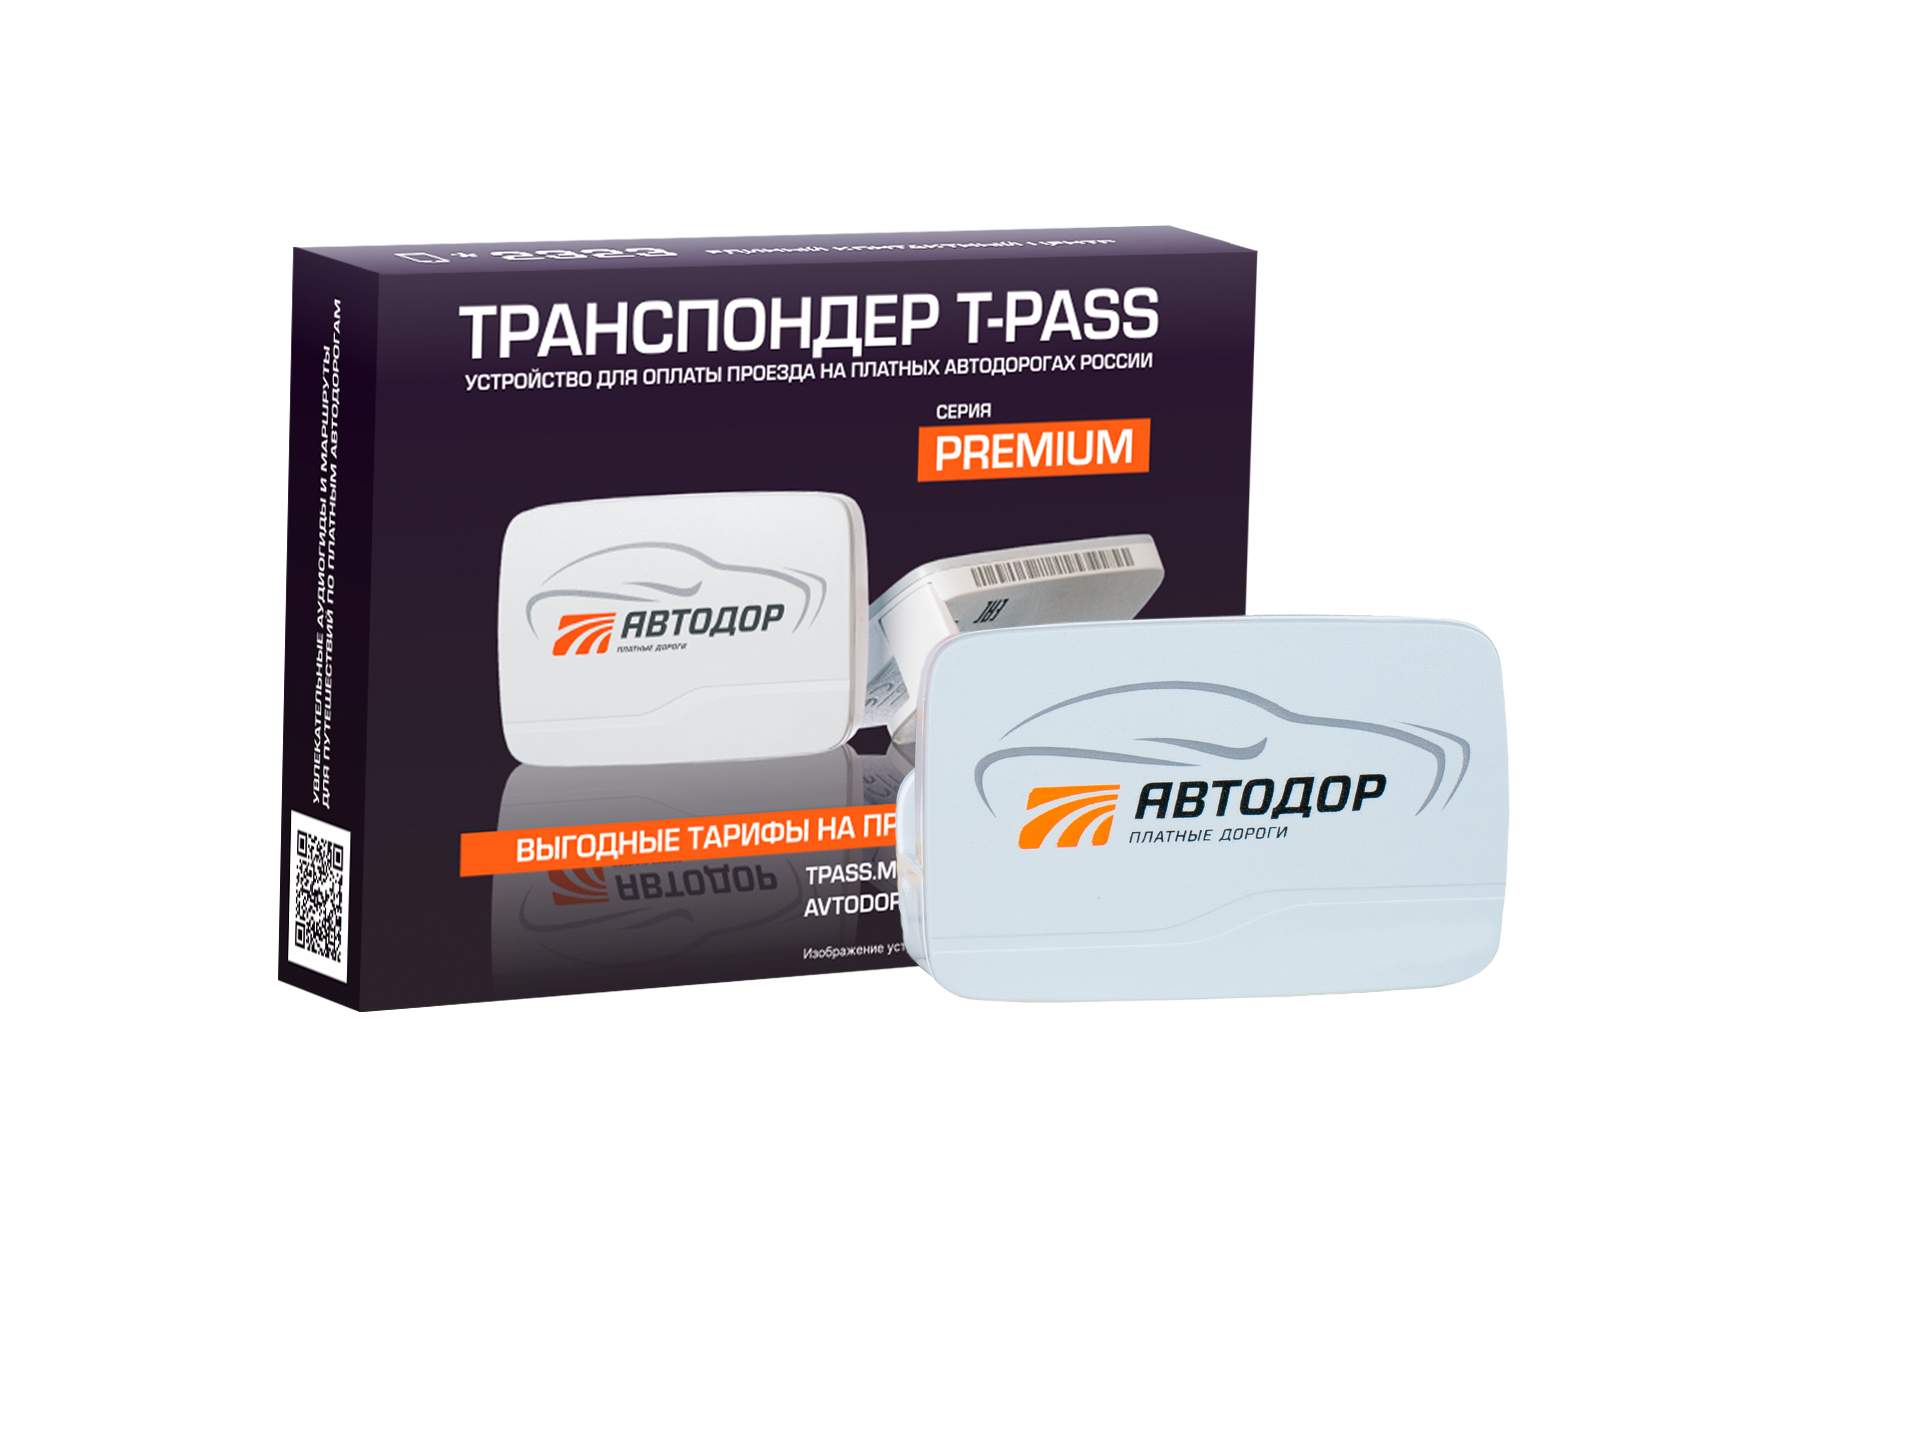 Транспондер T-pass Premium Kapsch TRP-4010 серый (Автодор-Платные Дороги)